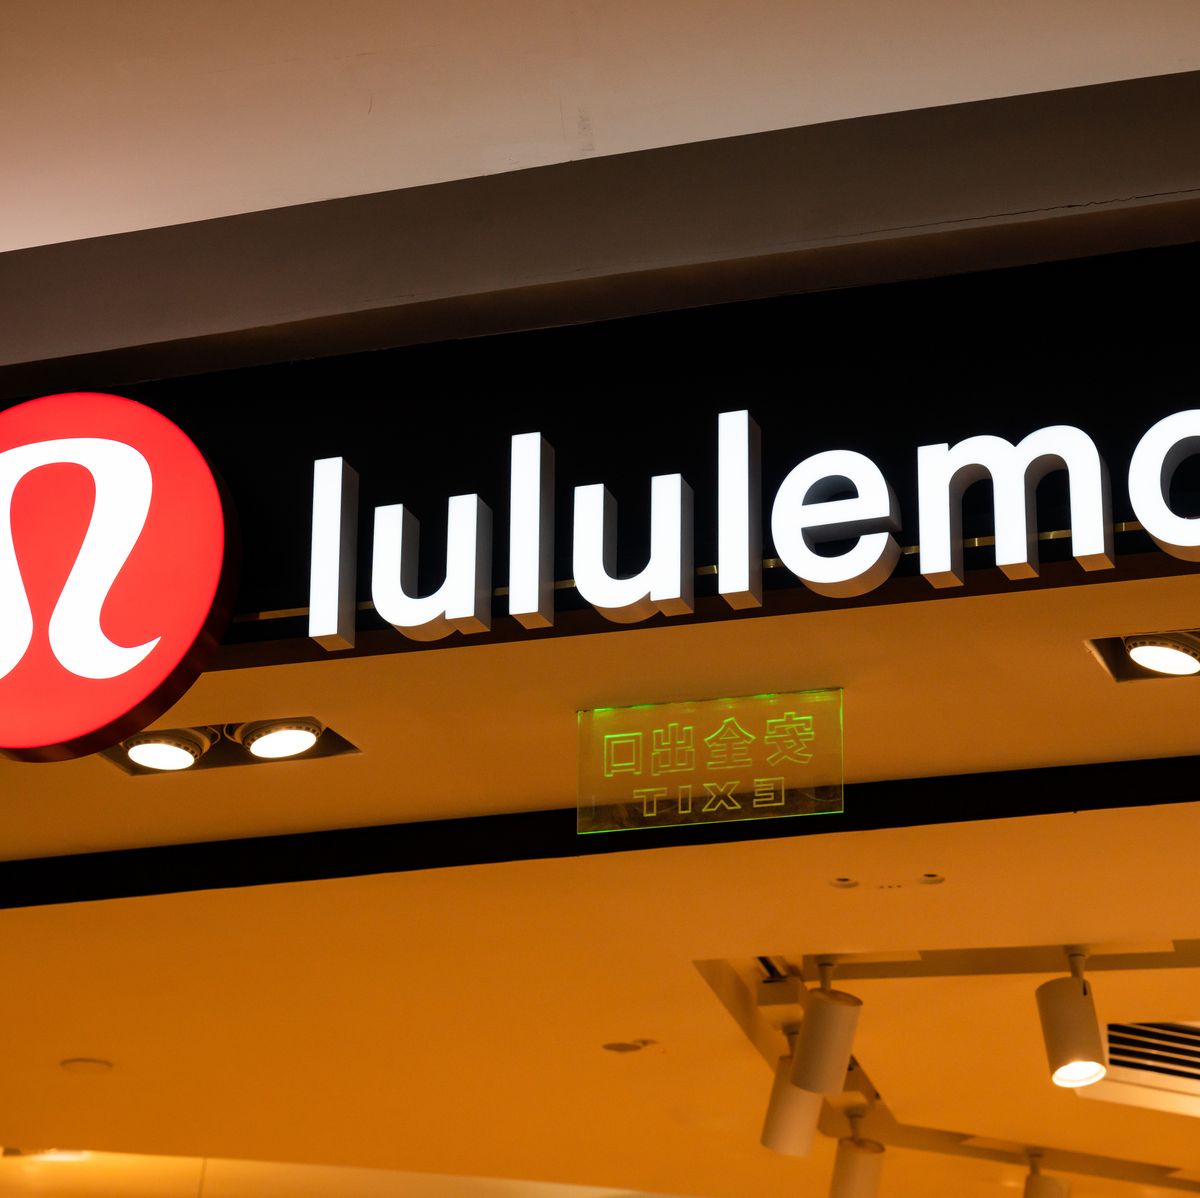 Brand New: New Logo for Lulu